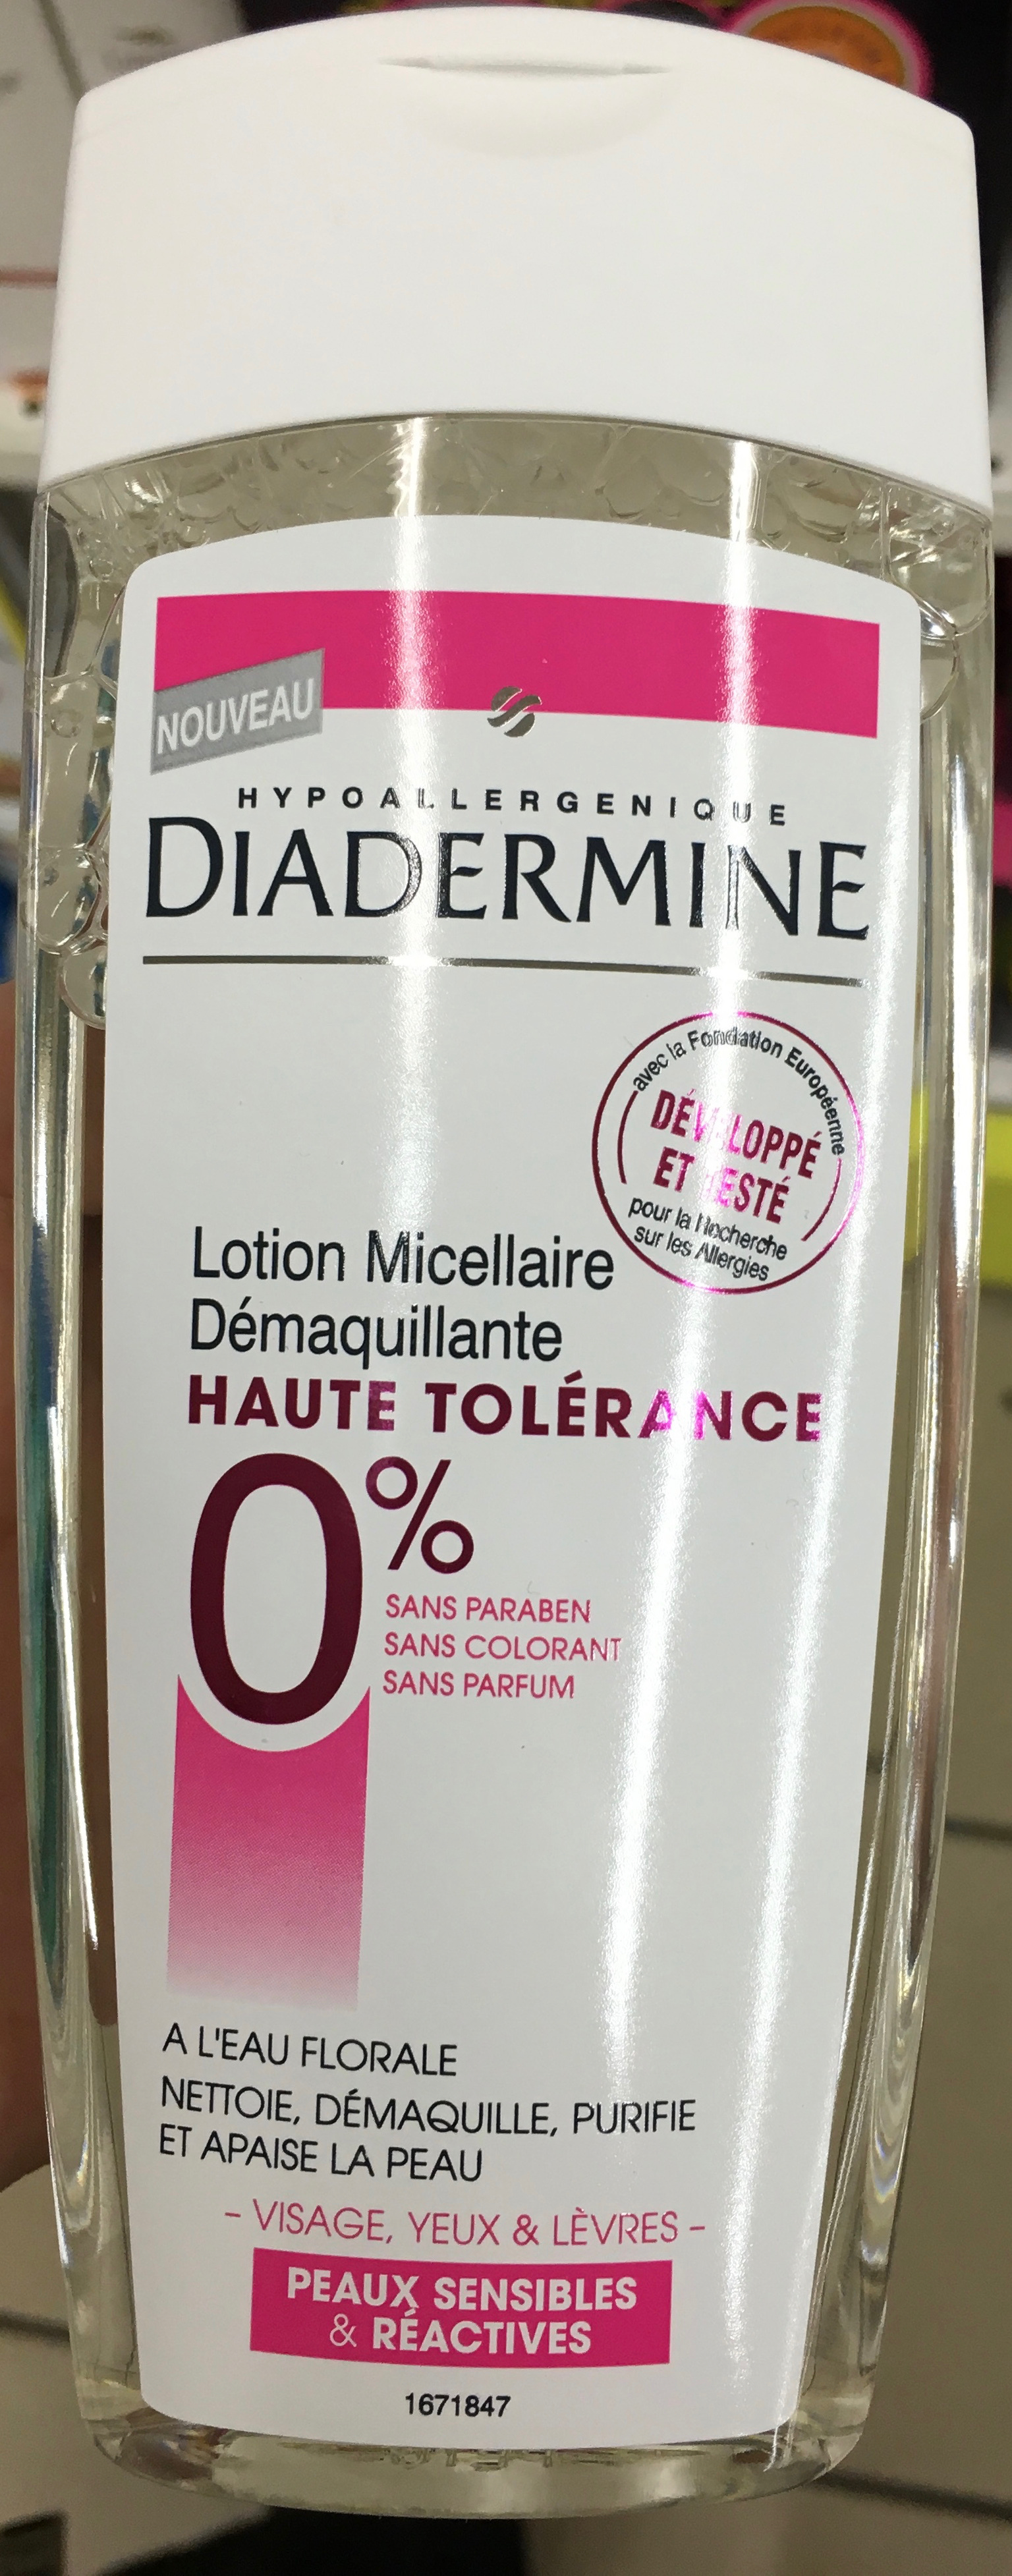 Lotion micellaire démaquillante Haute Tolérance - Produit - fr